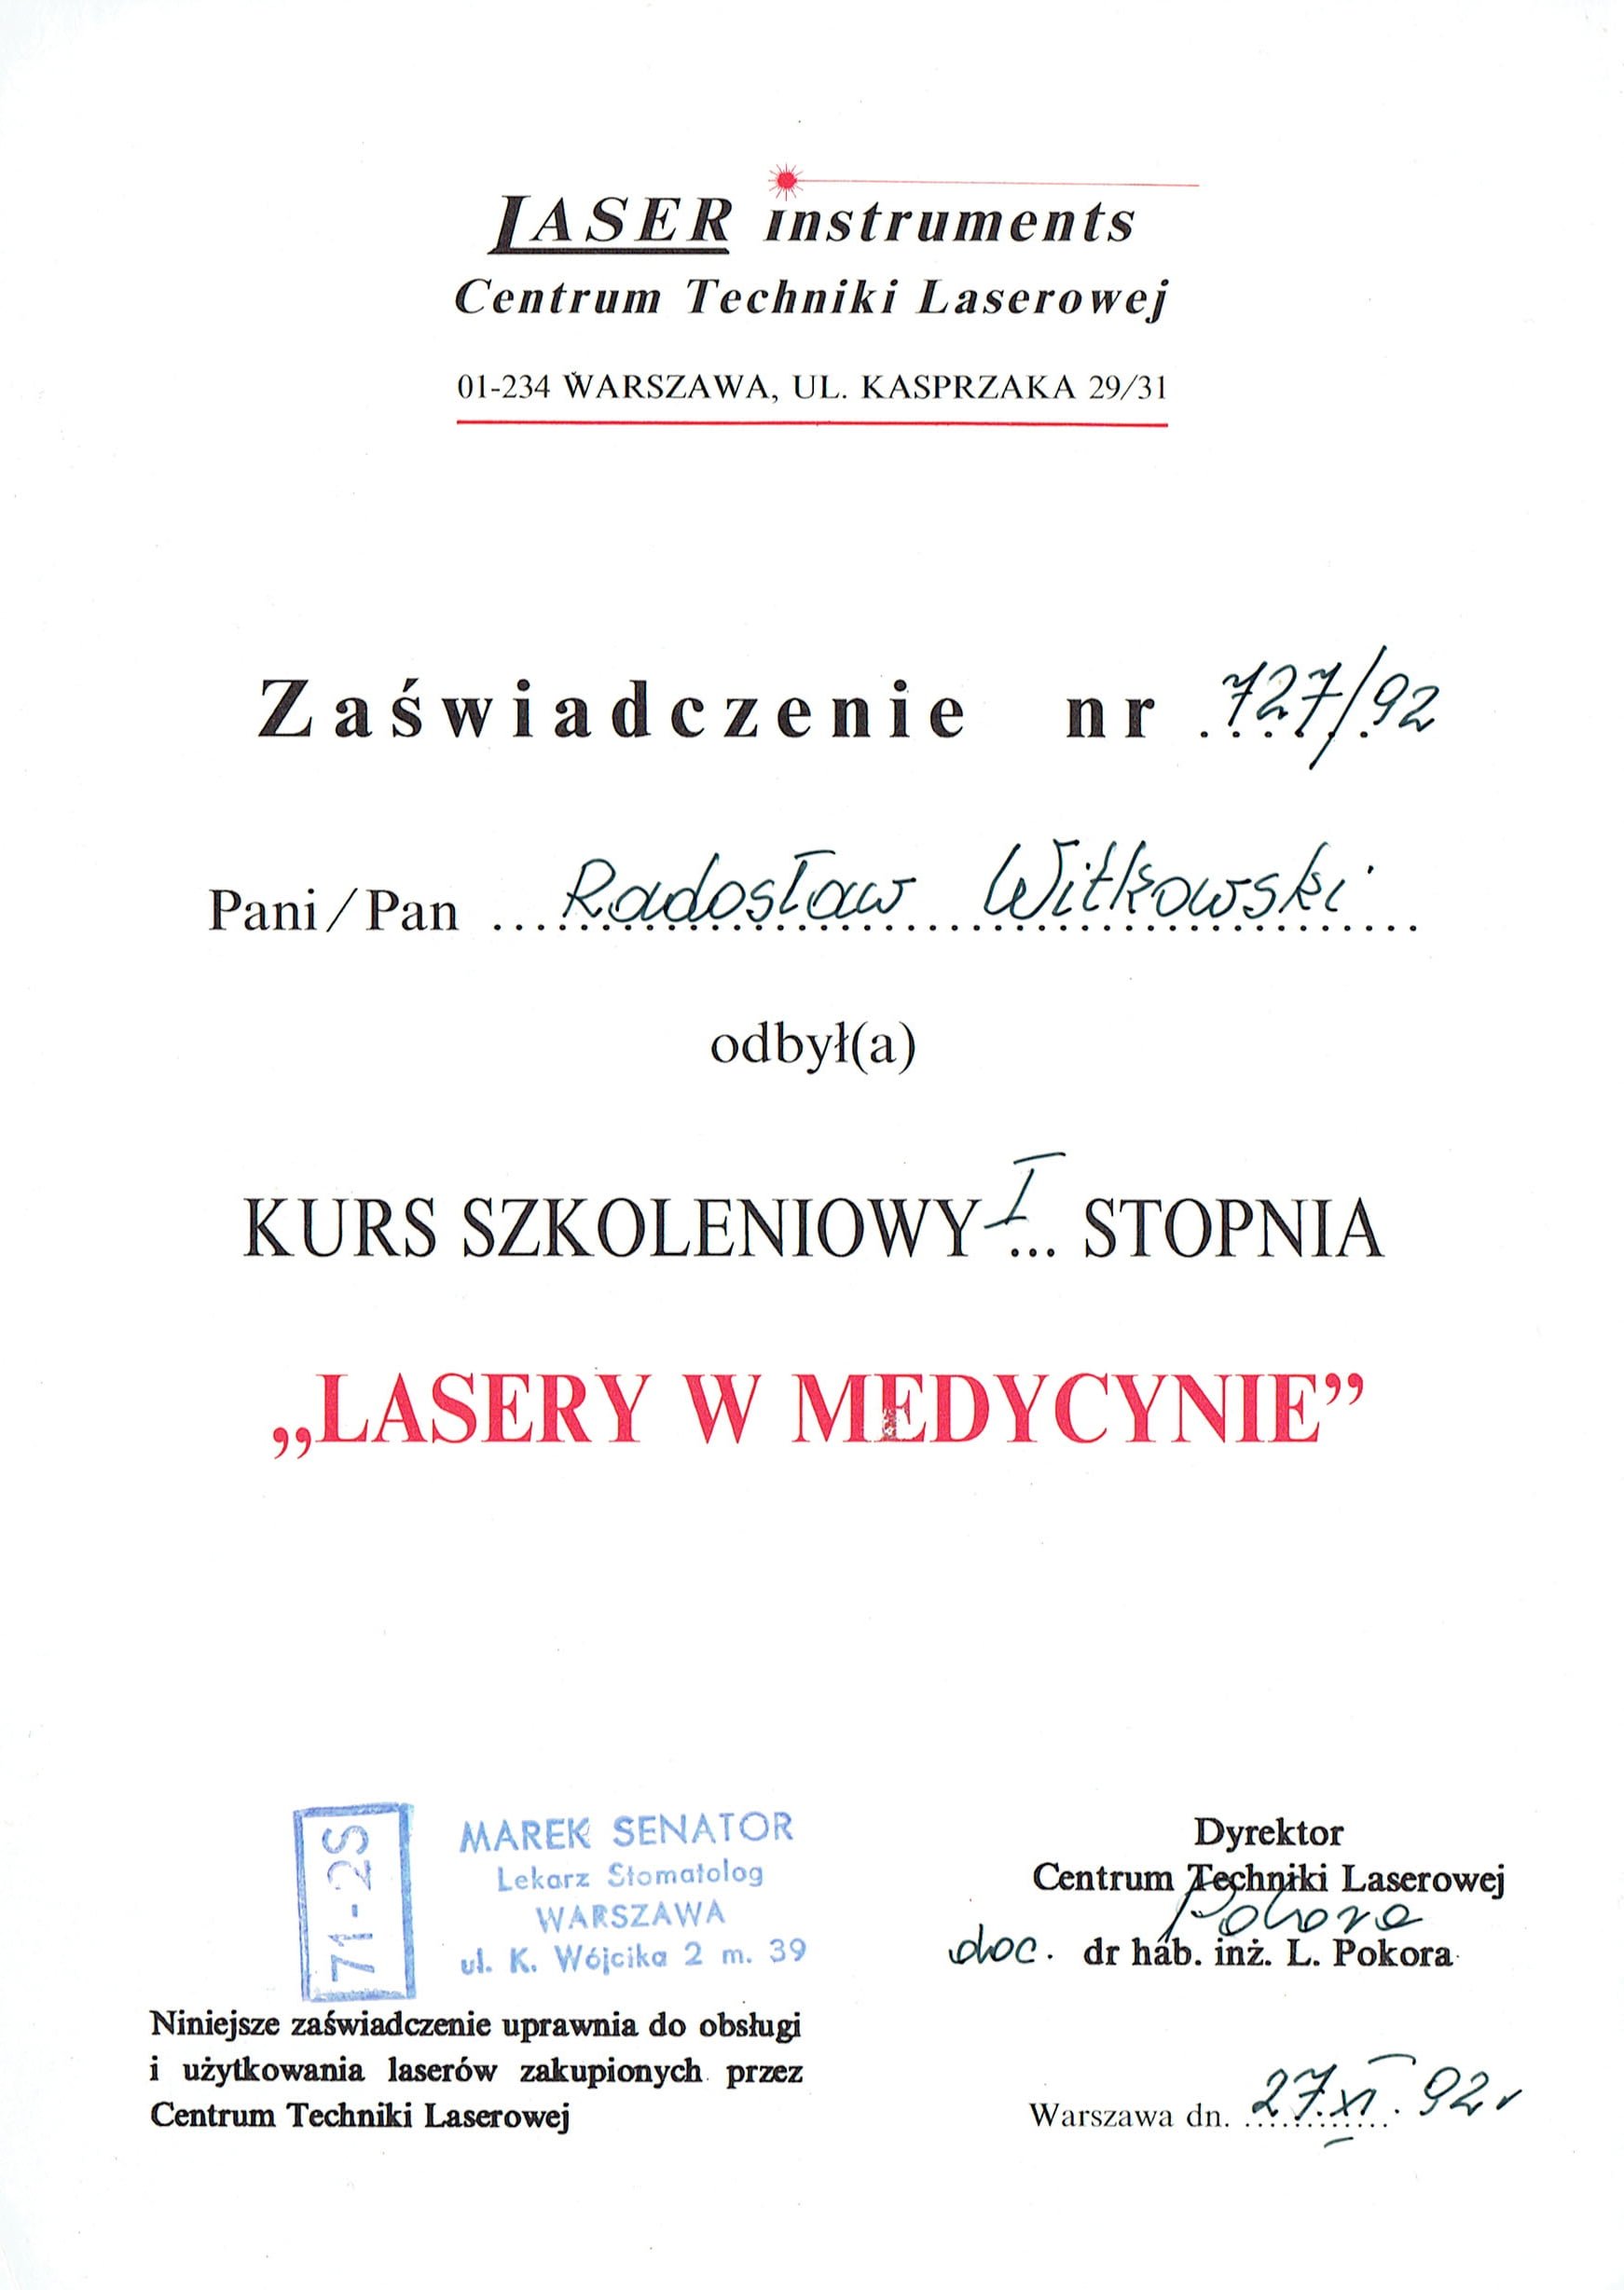 Radosław Witkowski certyfikat 1